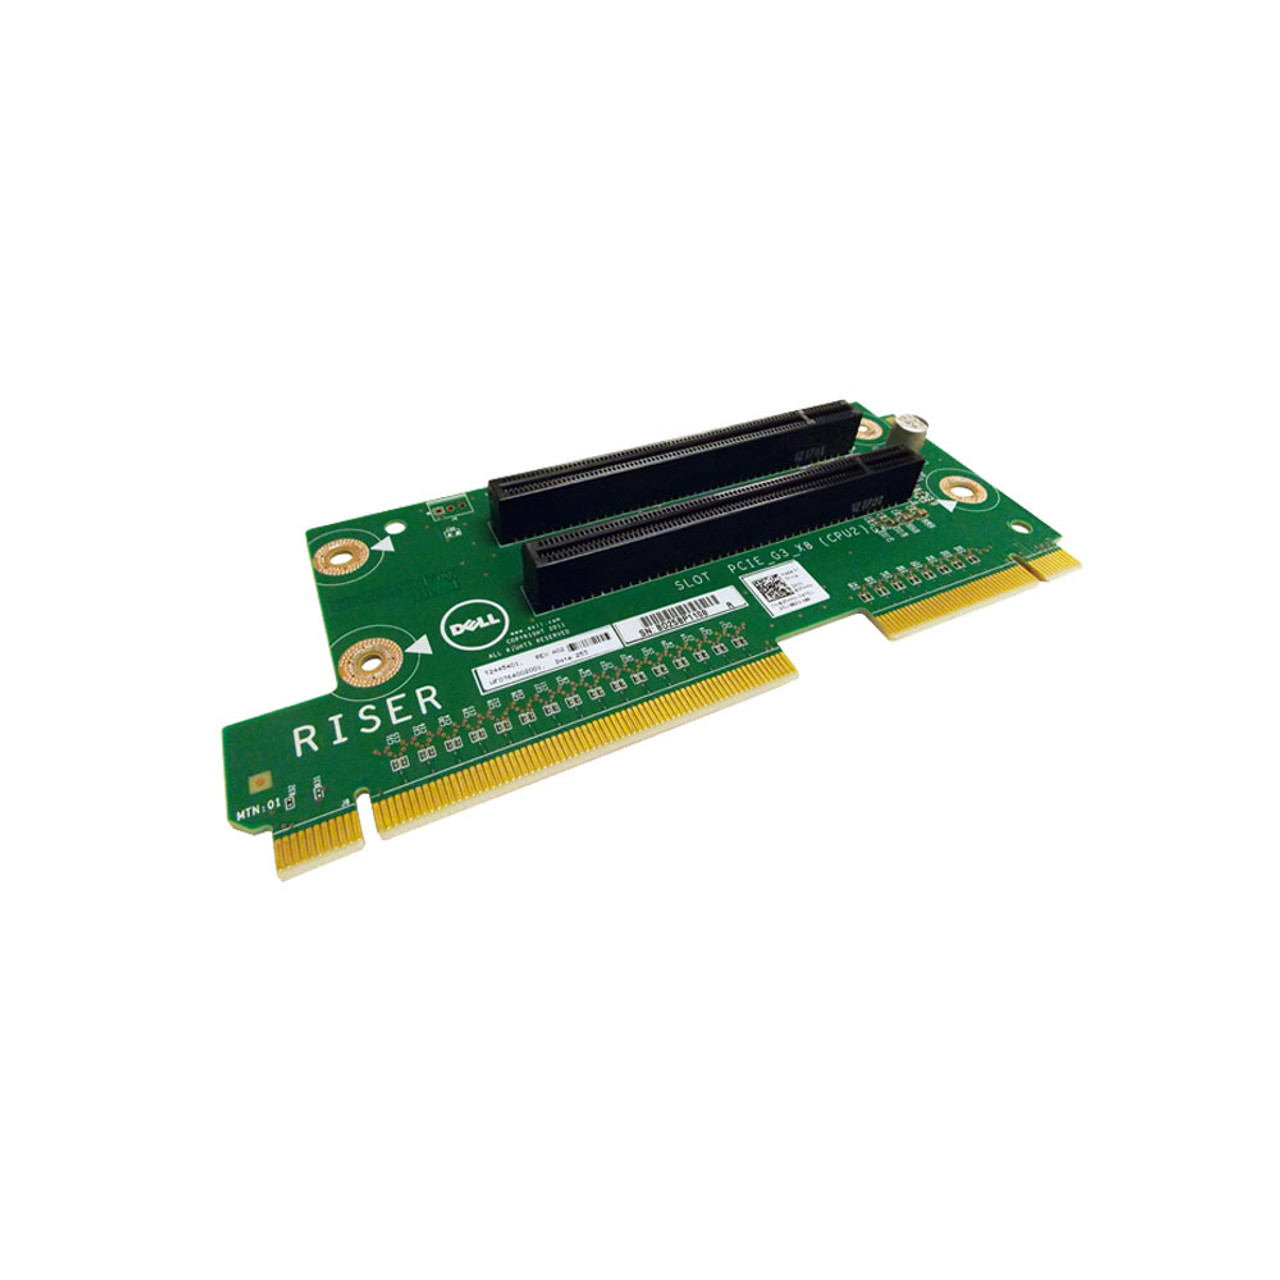 2W506-CO1-DEL#Dell PE 650 PCI-X Riser